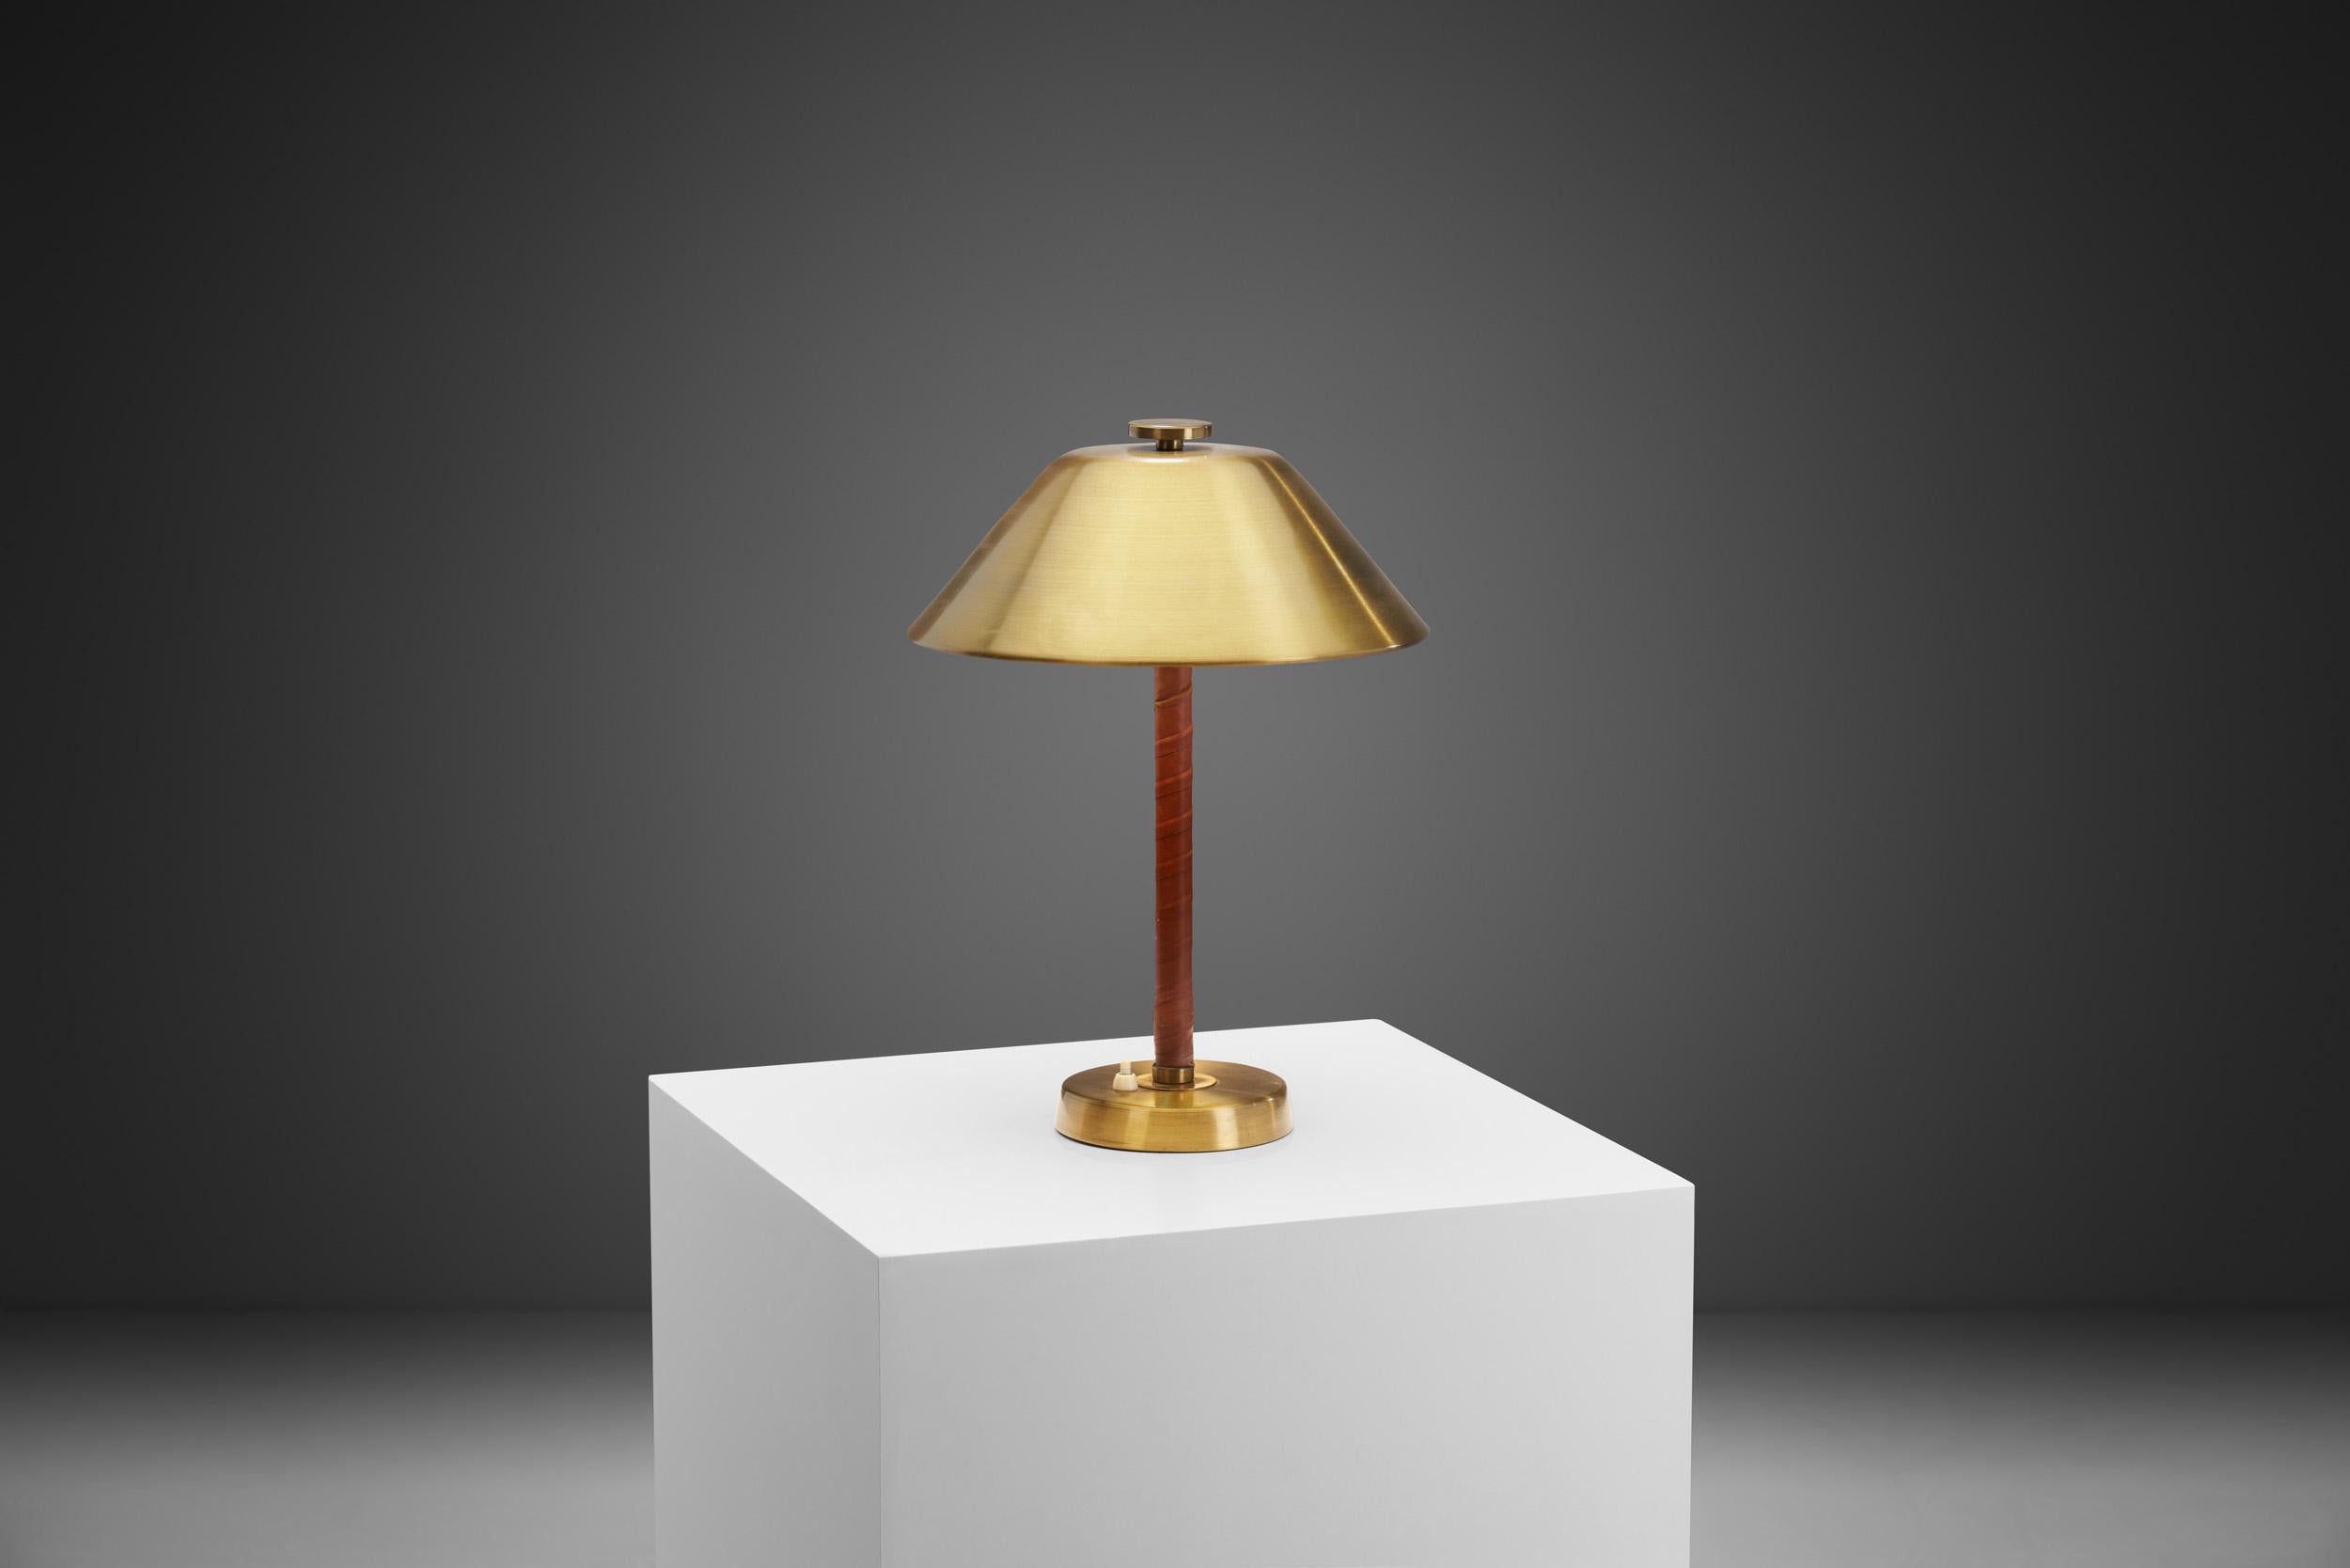 Cette lampe de table élégante est un modèle délicieusement distinctif, avec des détails et des choix de matériaux immédiatement reconnaissables. Selon le musée de Malmö, Einar Bäckström a fondé son atelier en 1918 pour la fabrication de luminaires